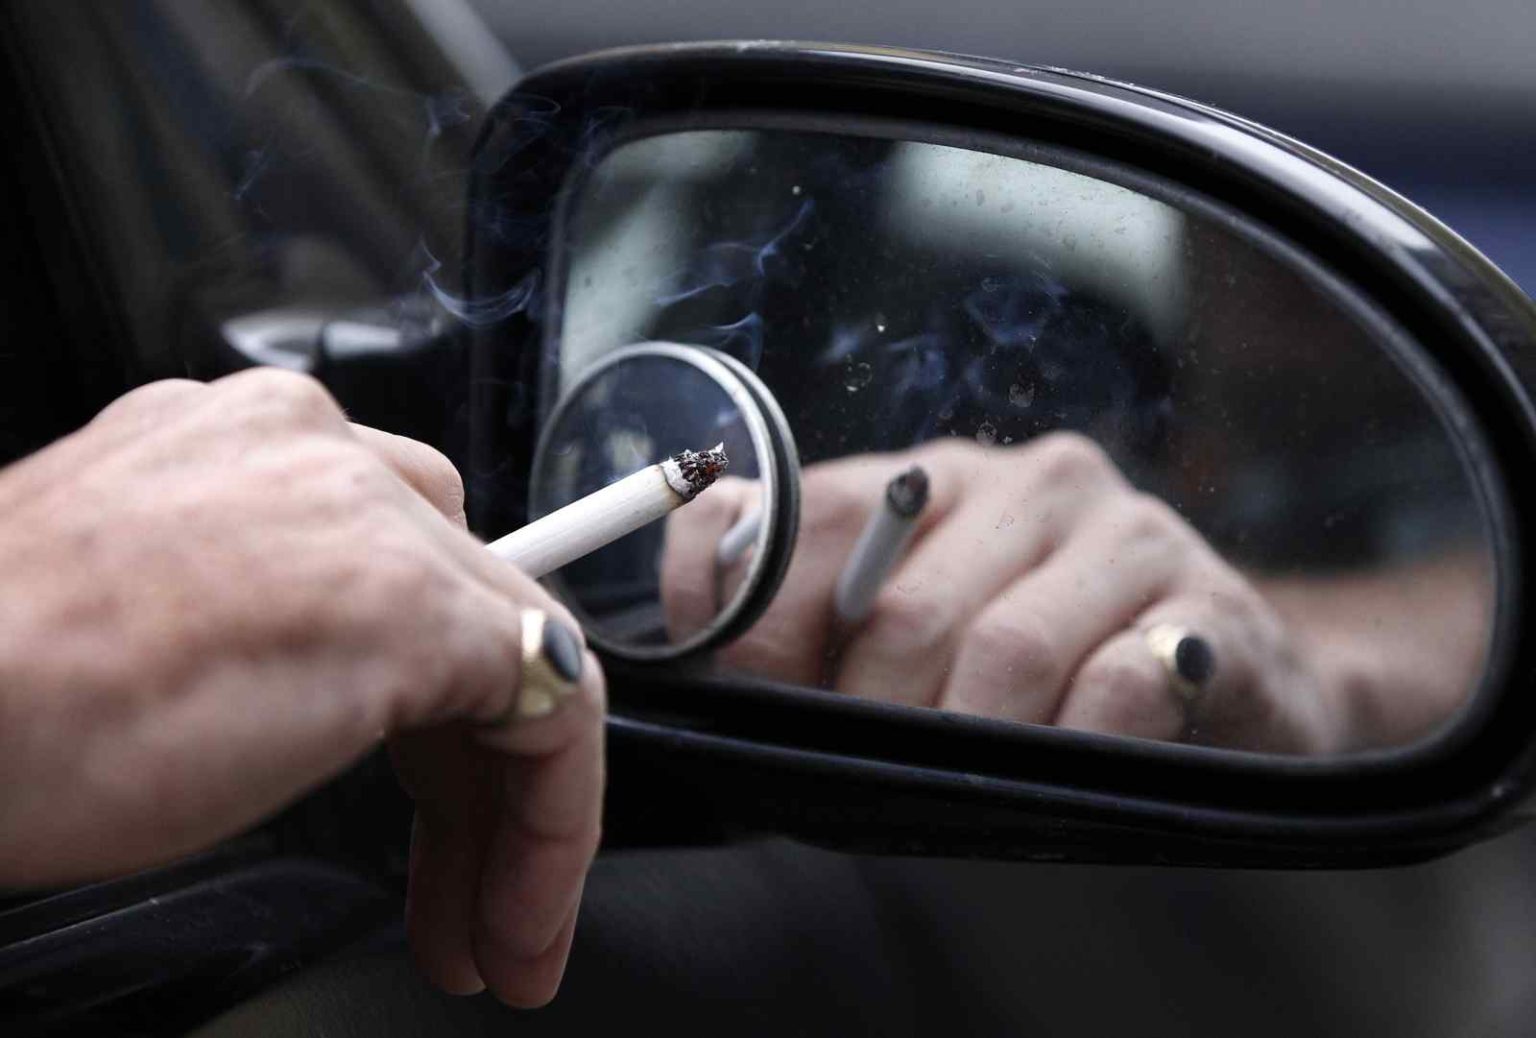  روش های مختلف برای پاک کردن بوی سیگار در ماشین